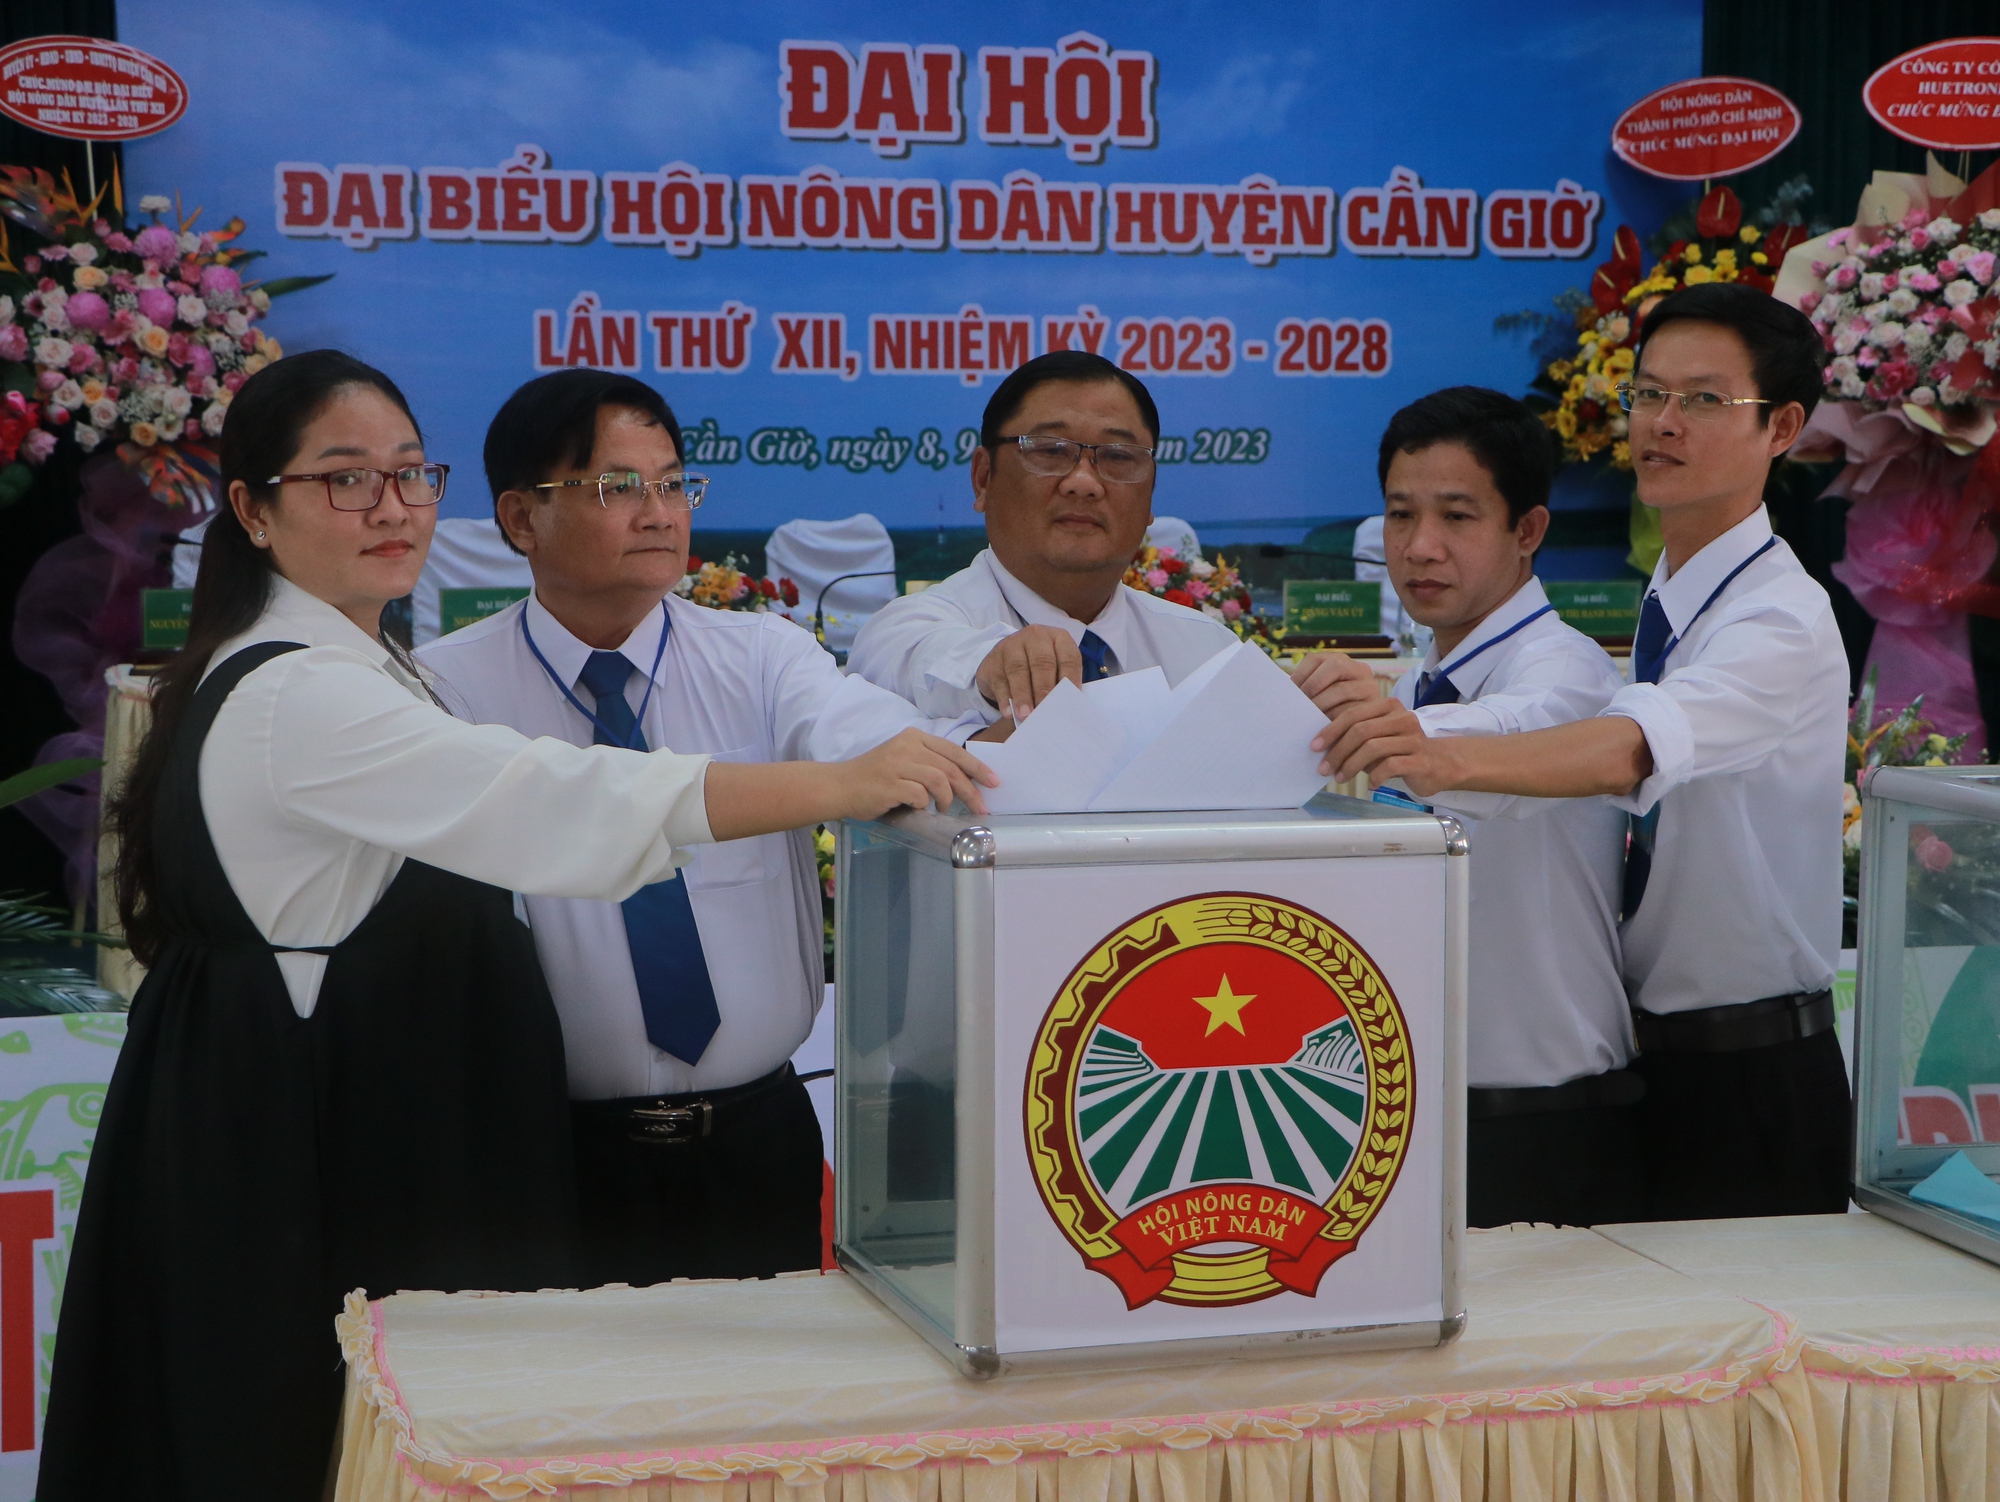 Đại hội Hội Nông dân huyện Cần Giờ, ông Lê Văn Được tái đắc cử - Ảnh 5.